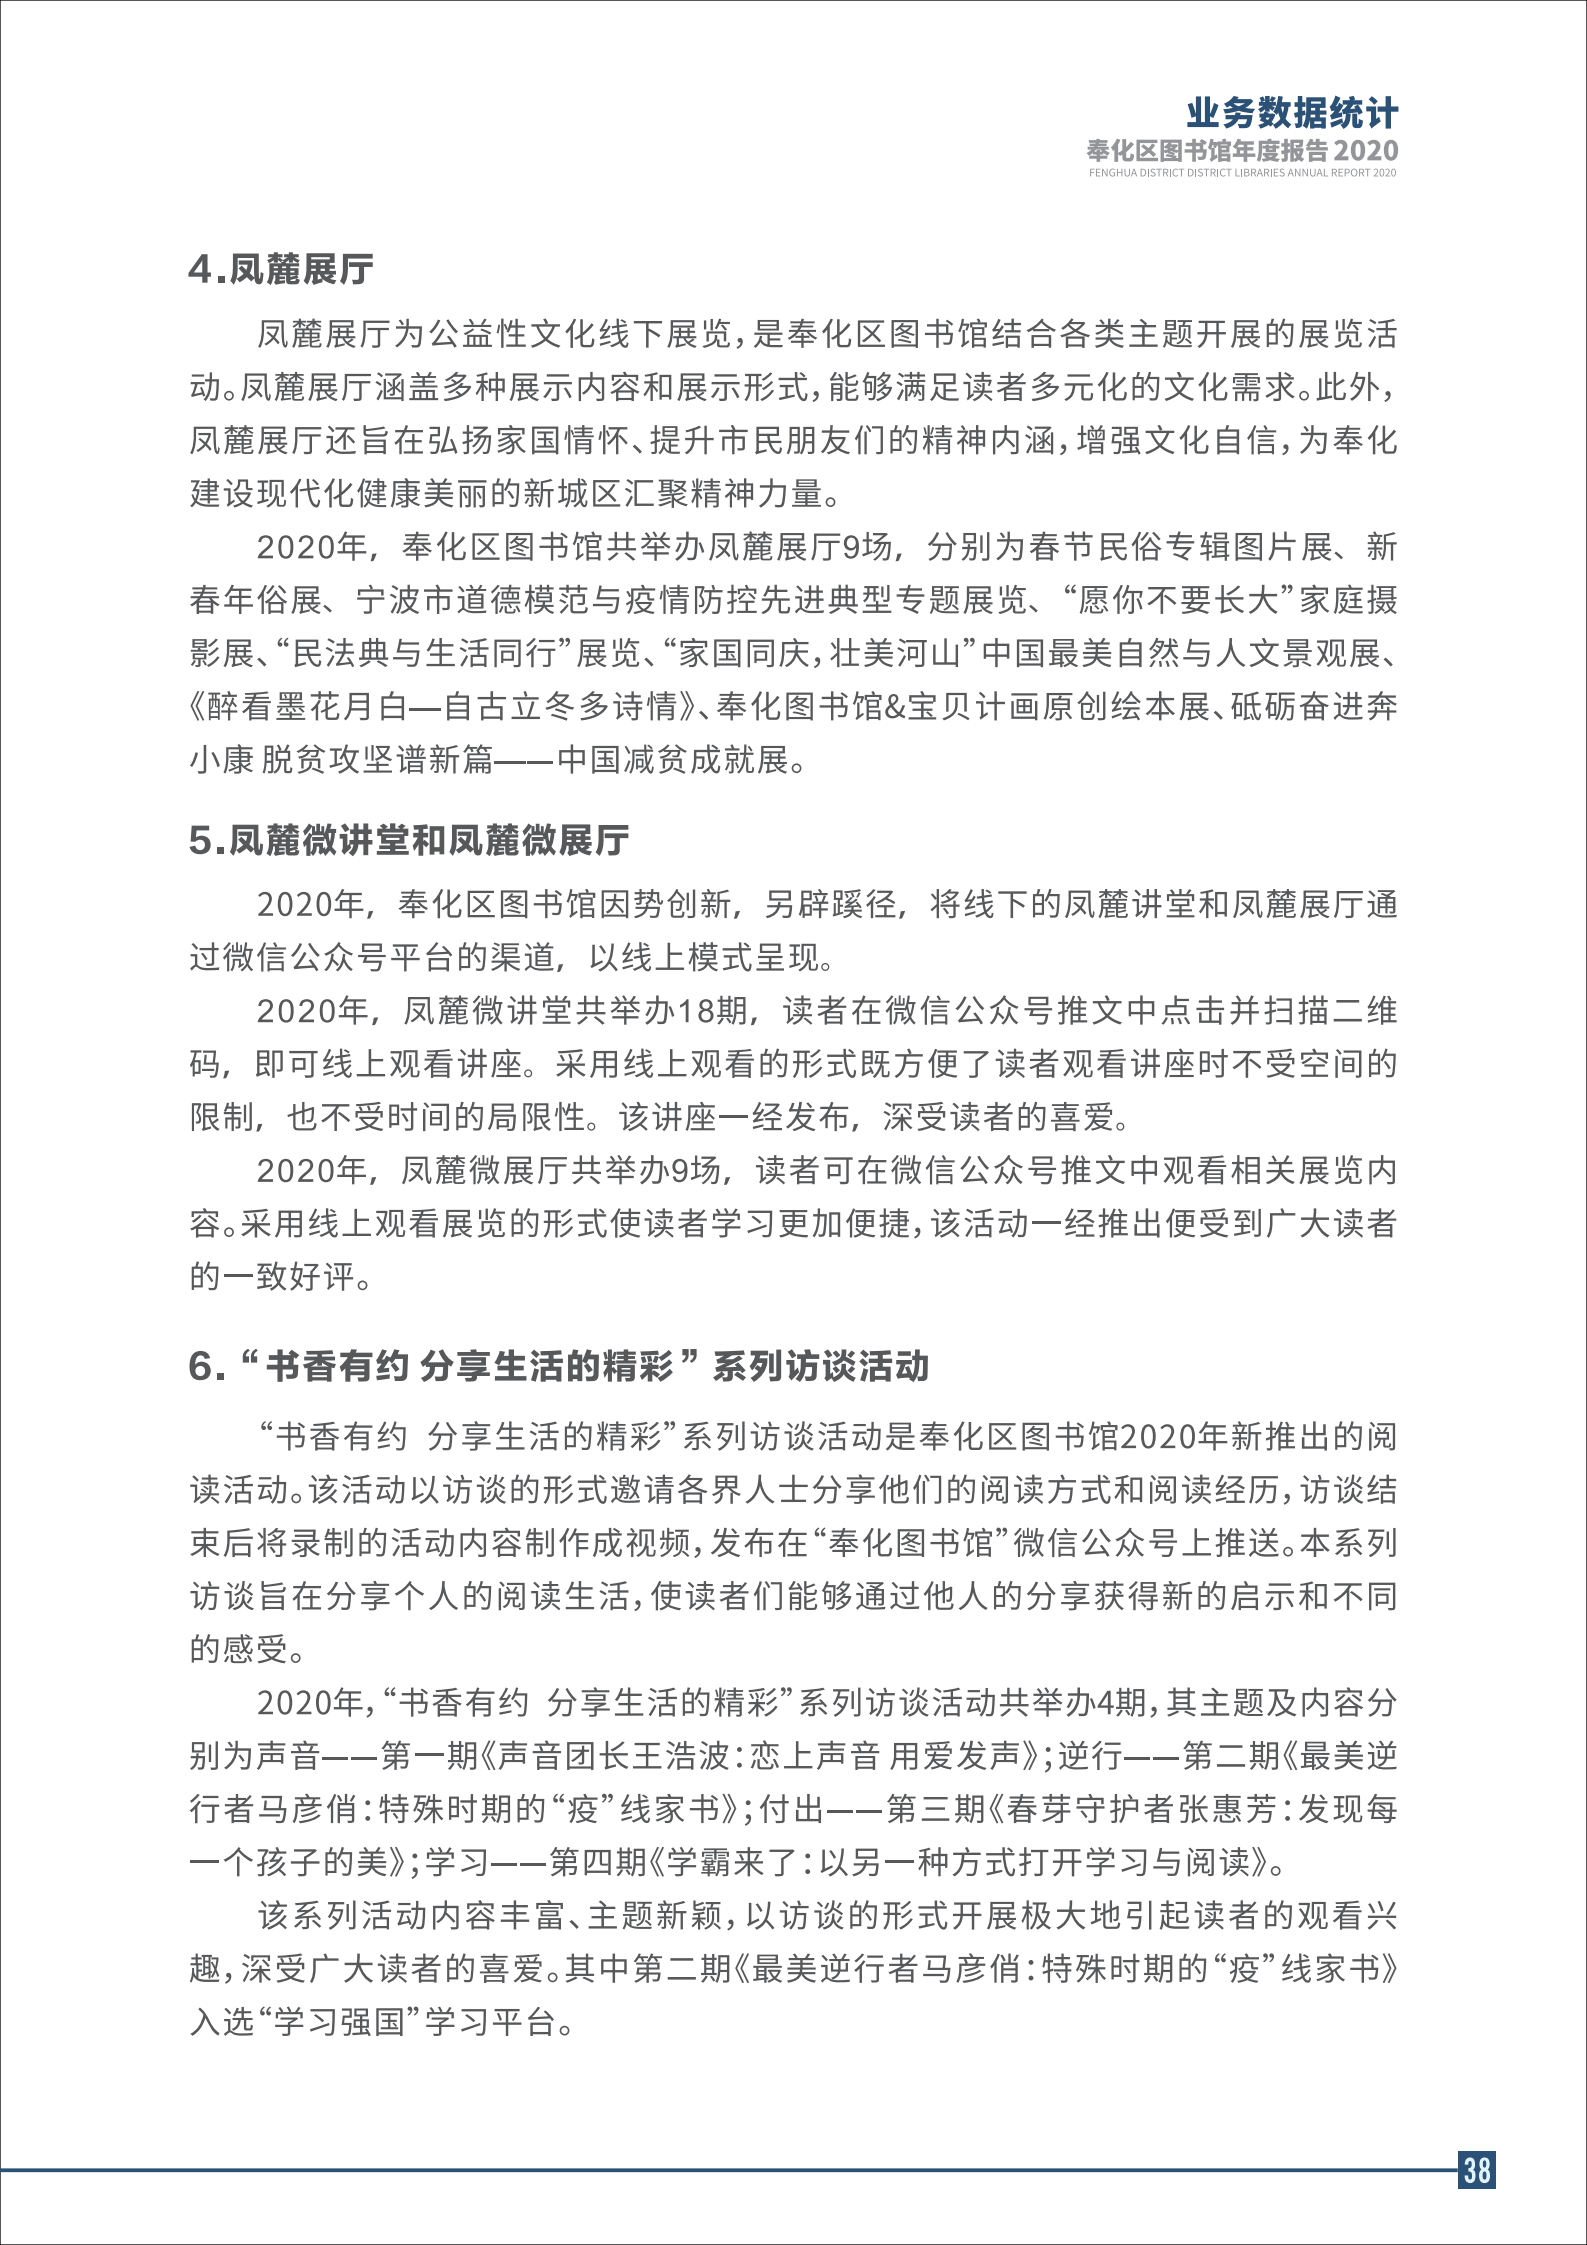 宁波市奉化区图书馆2020年年度报告 终稿_38.png